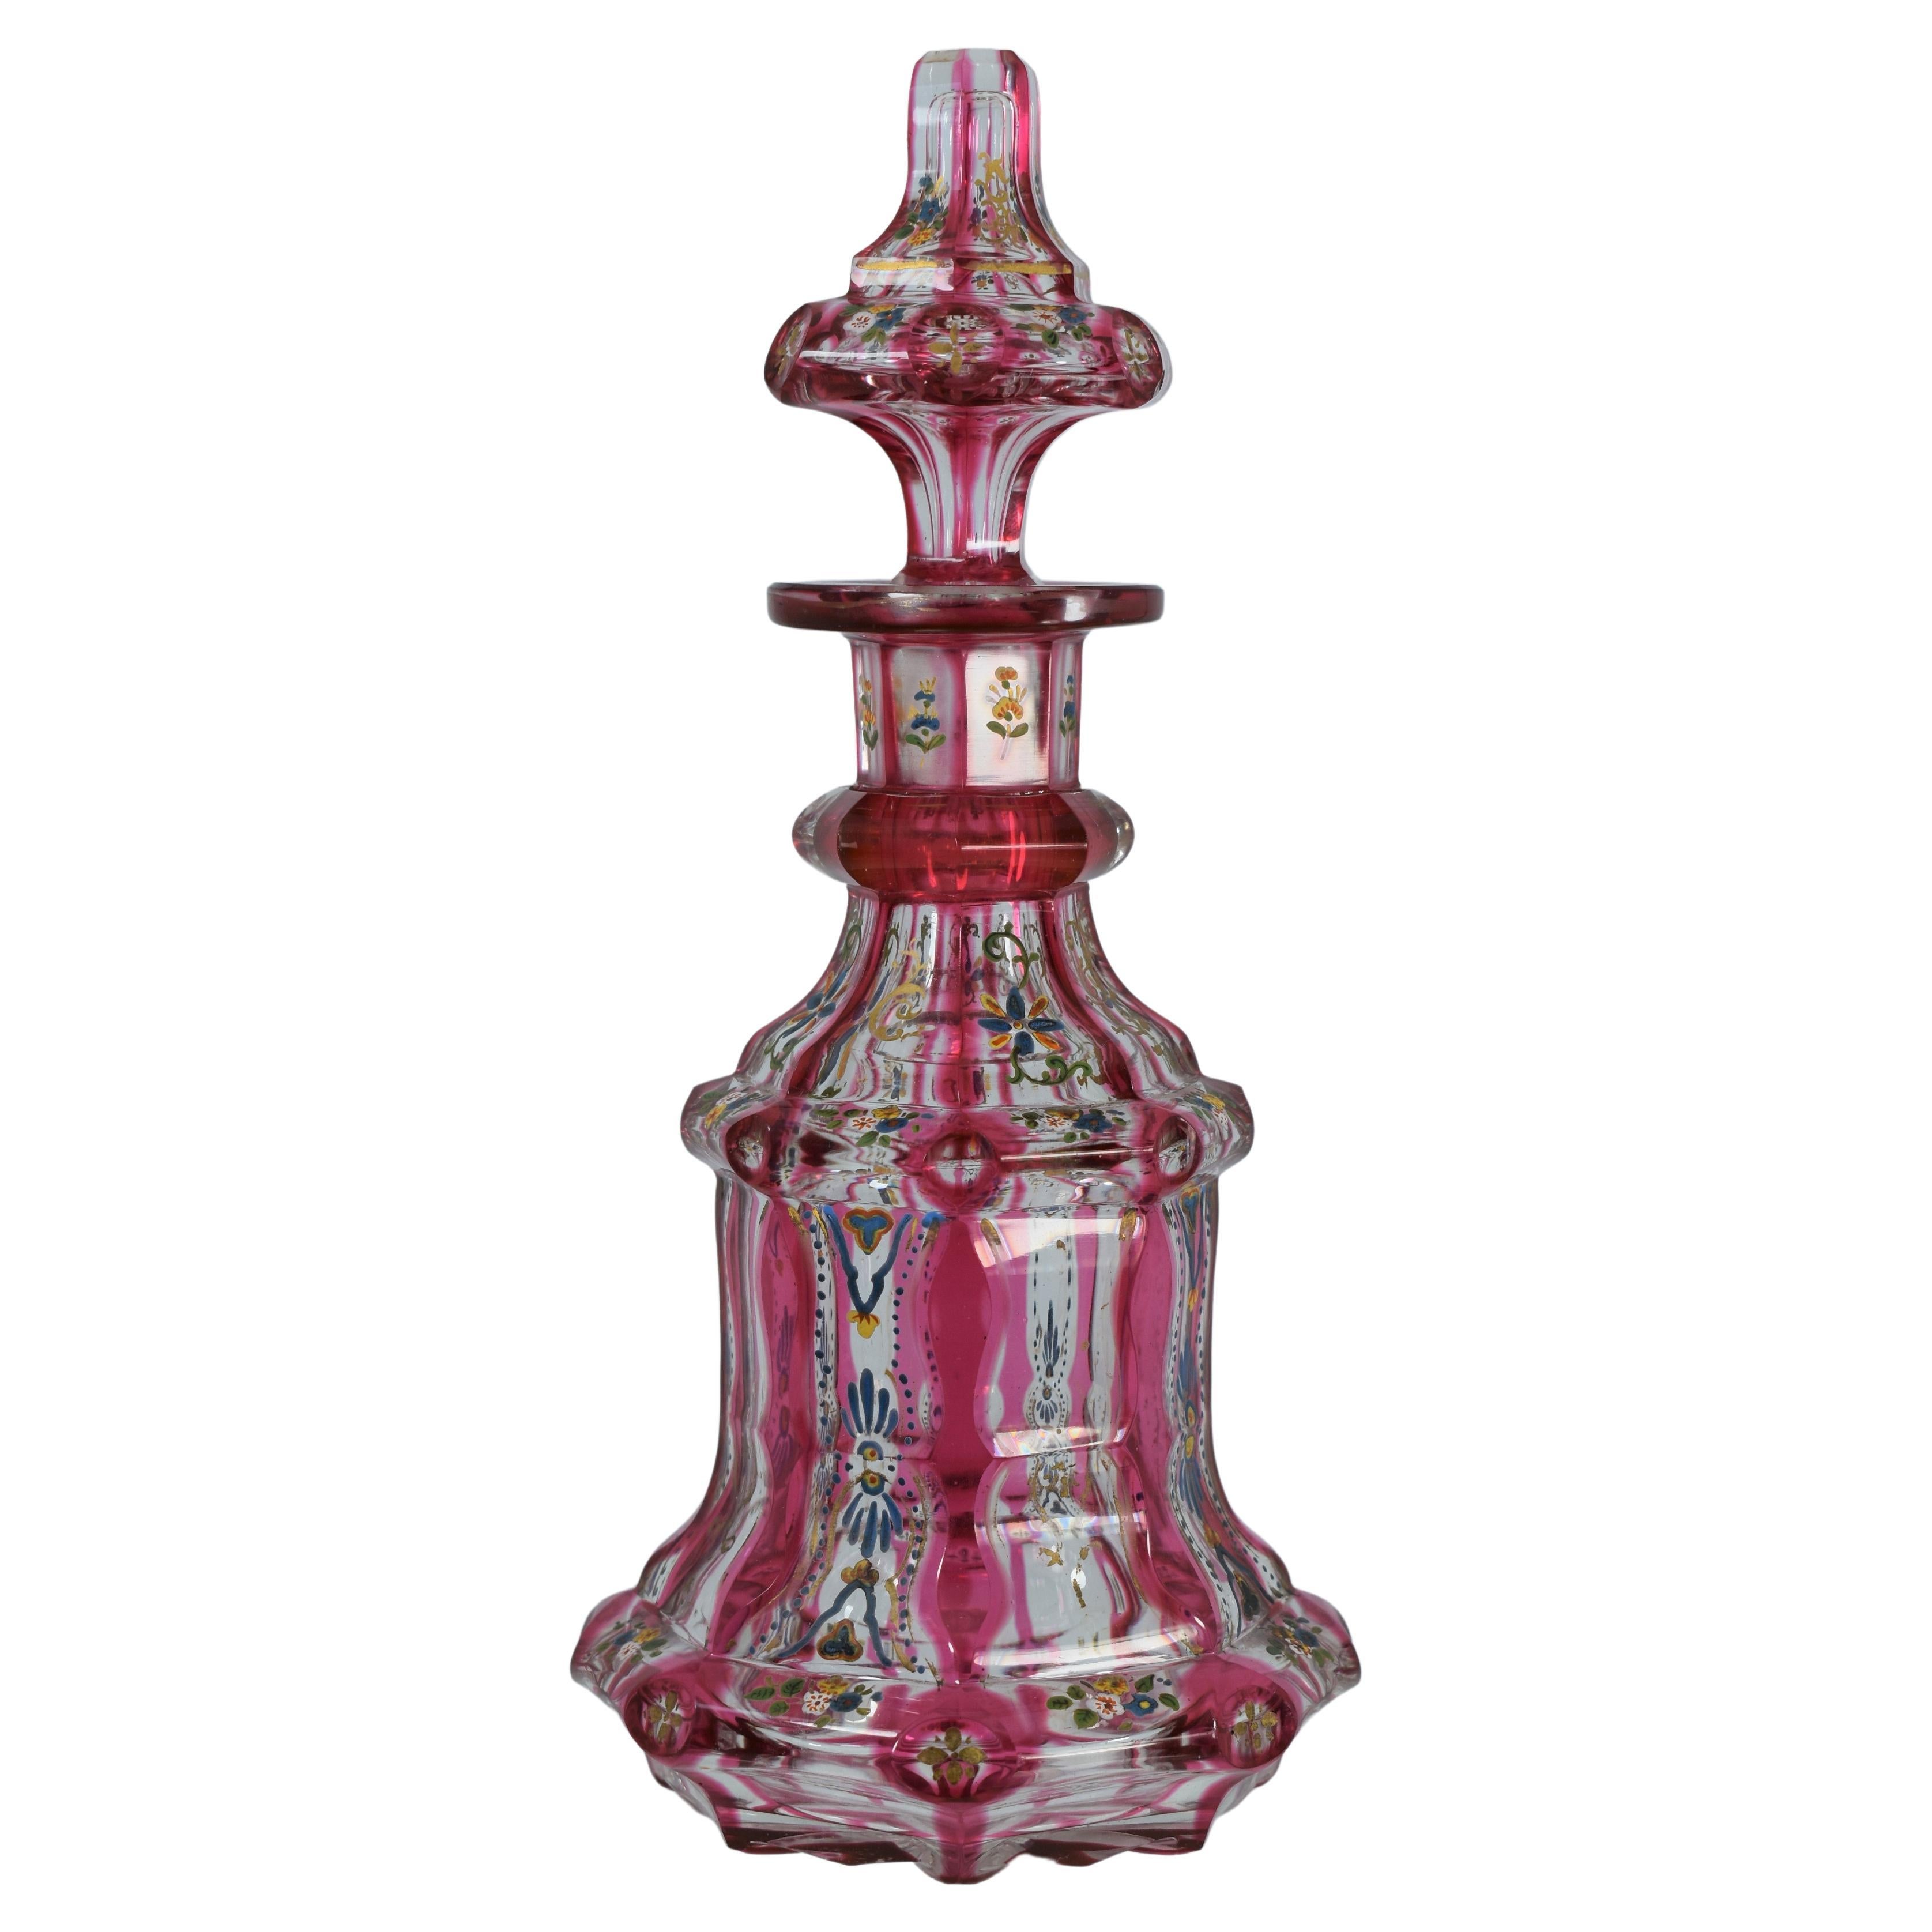 Antike böhmische Parfümflasche aus emailliertem Glas mit Preiselbeer emailliertem Glas, 19. Jahrhundert